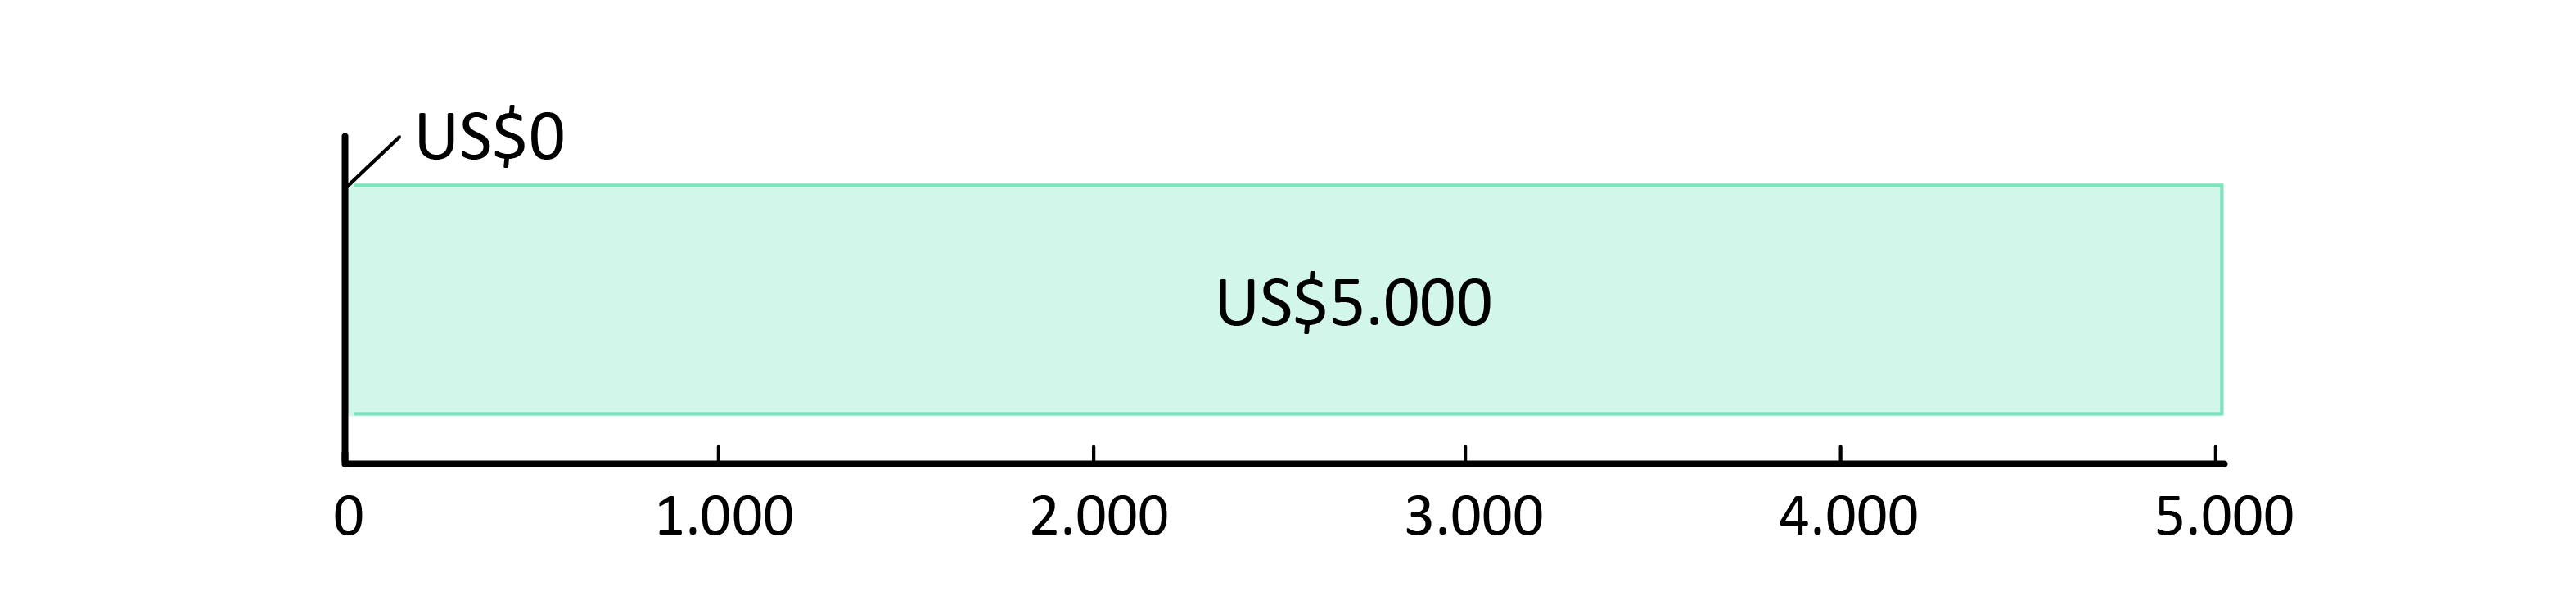 US$0 fueron usados; US$5.000 restan